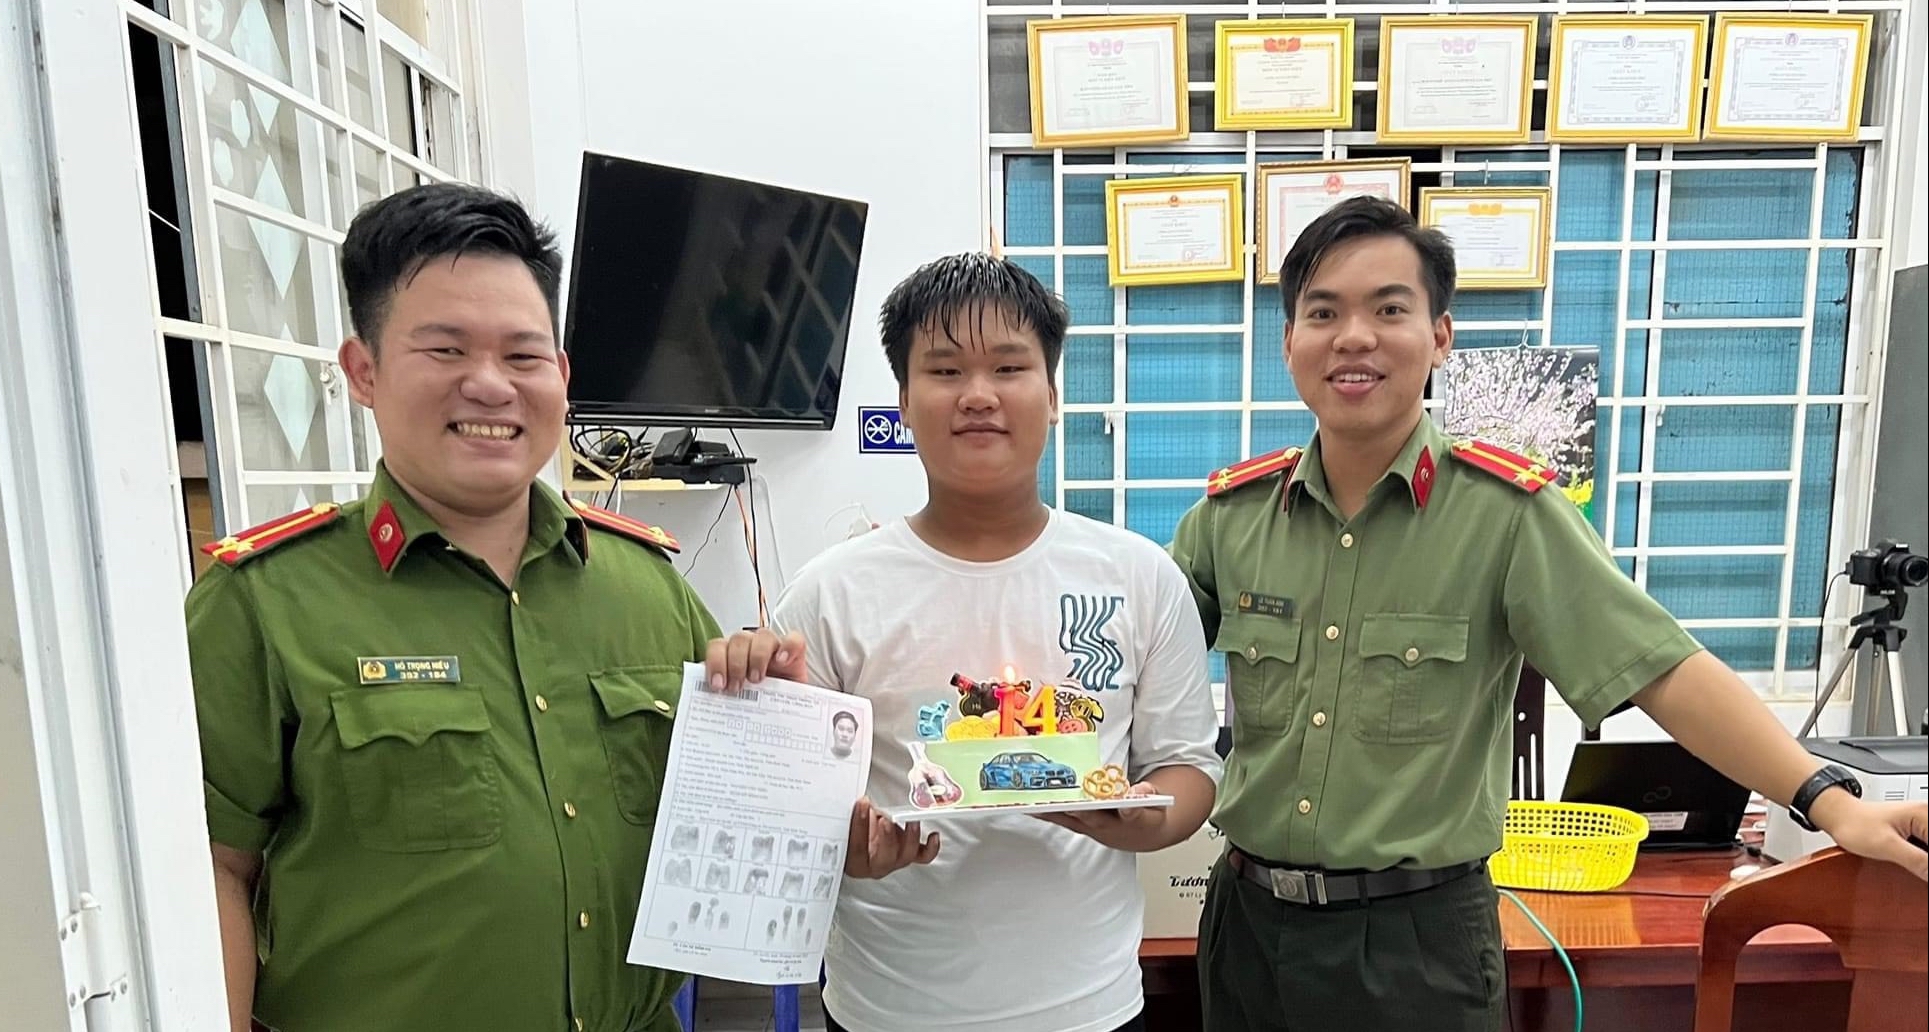 Bình Thuận: Thiếu niên 14 tuổi đi làm căn cước công dân bất ngờ nhận &quot;thưởng&quot; từ công an đúng ngày sinh nhật - Ảnh 1.